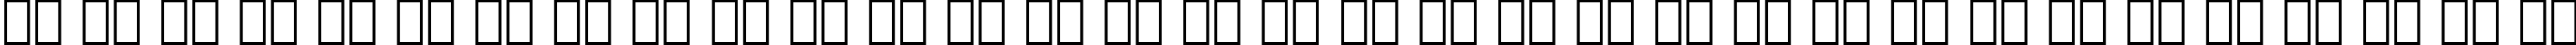 Пример написания русского алфавита шрифтом Souvenir Demi Italic BT